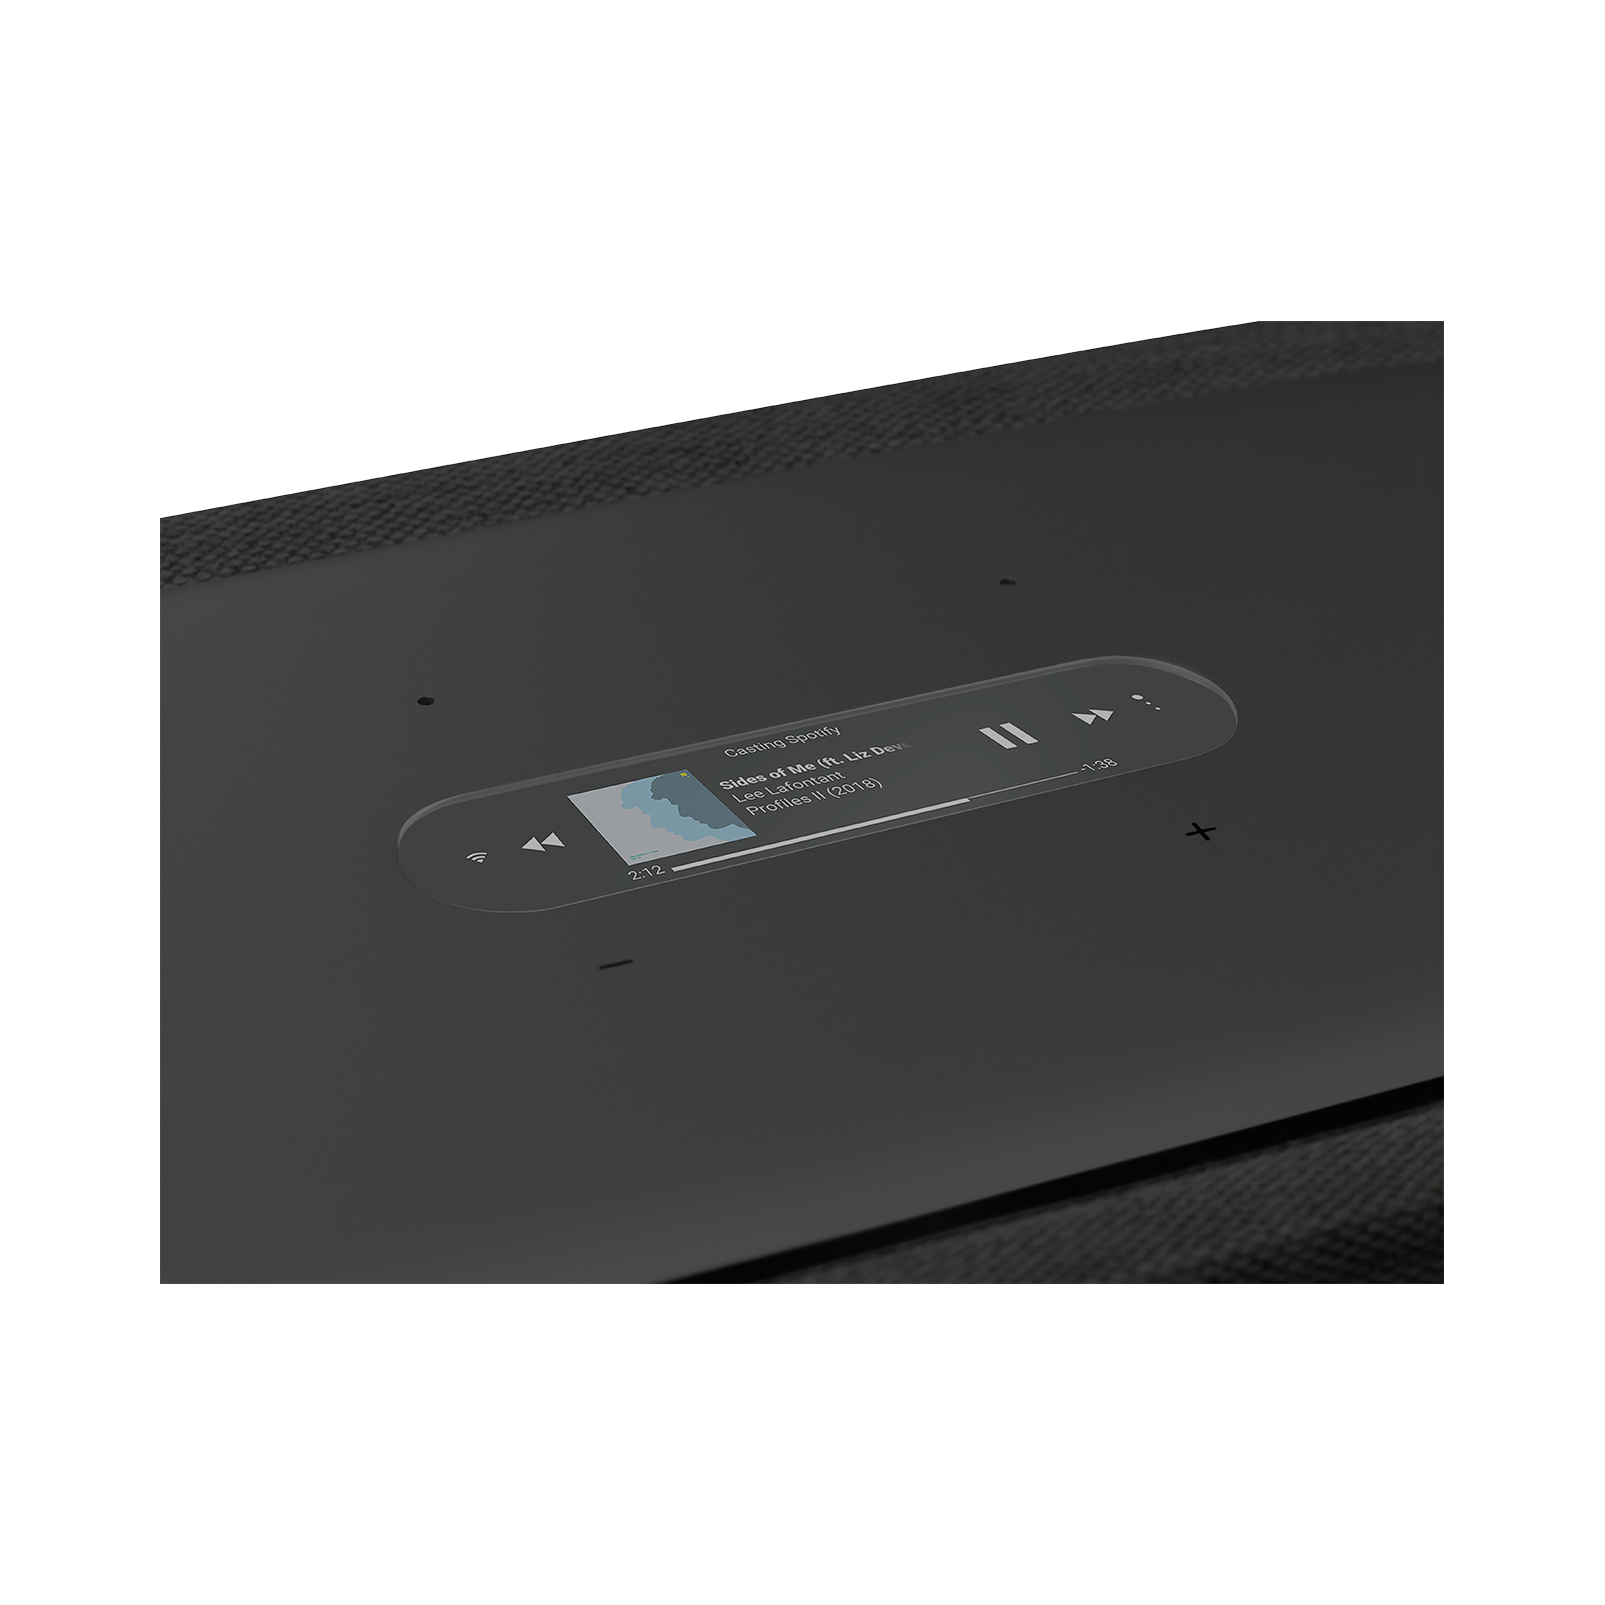 Harman Kardon Citation 500 - Black - Large Tabletop Smart Home Loudspeaker System - Detailshot 1